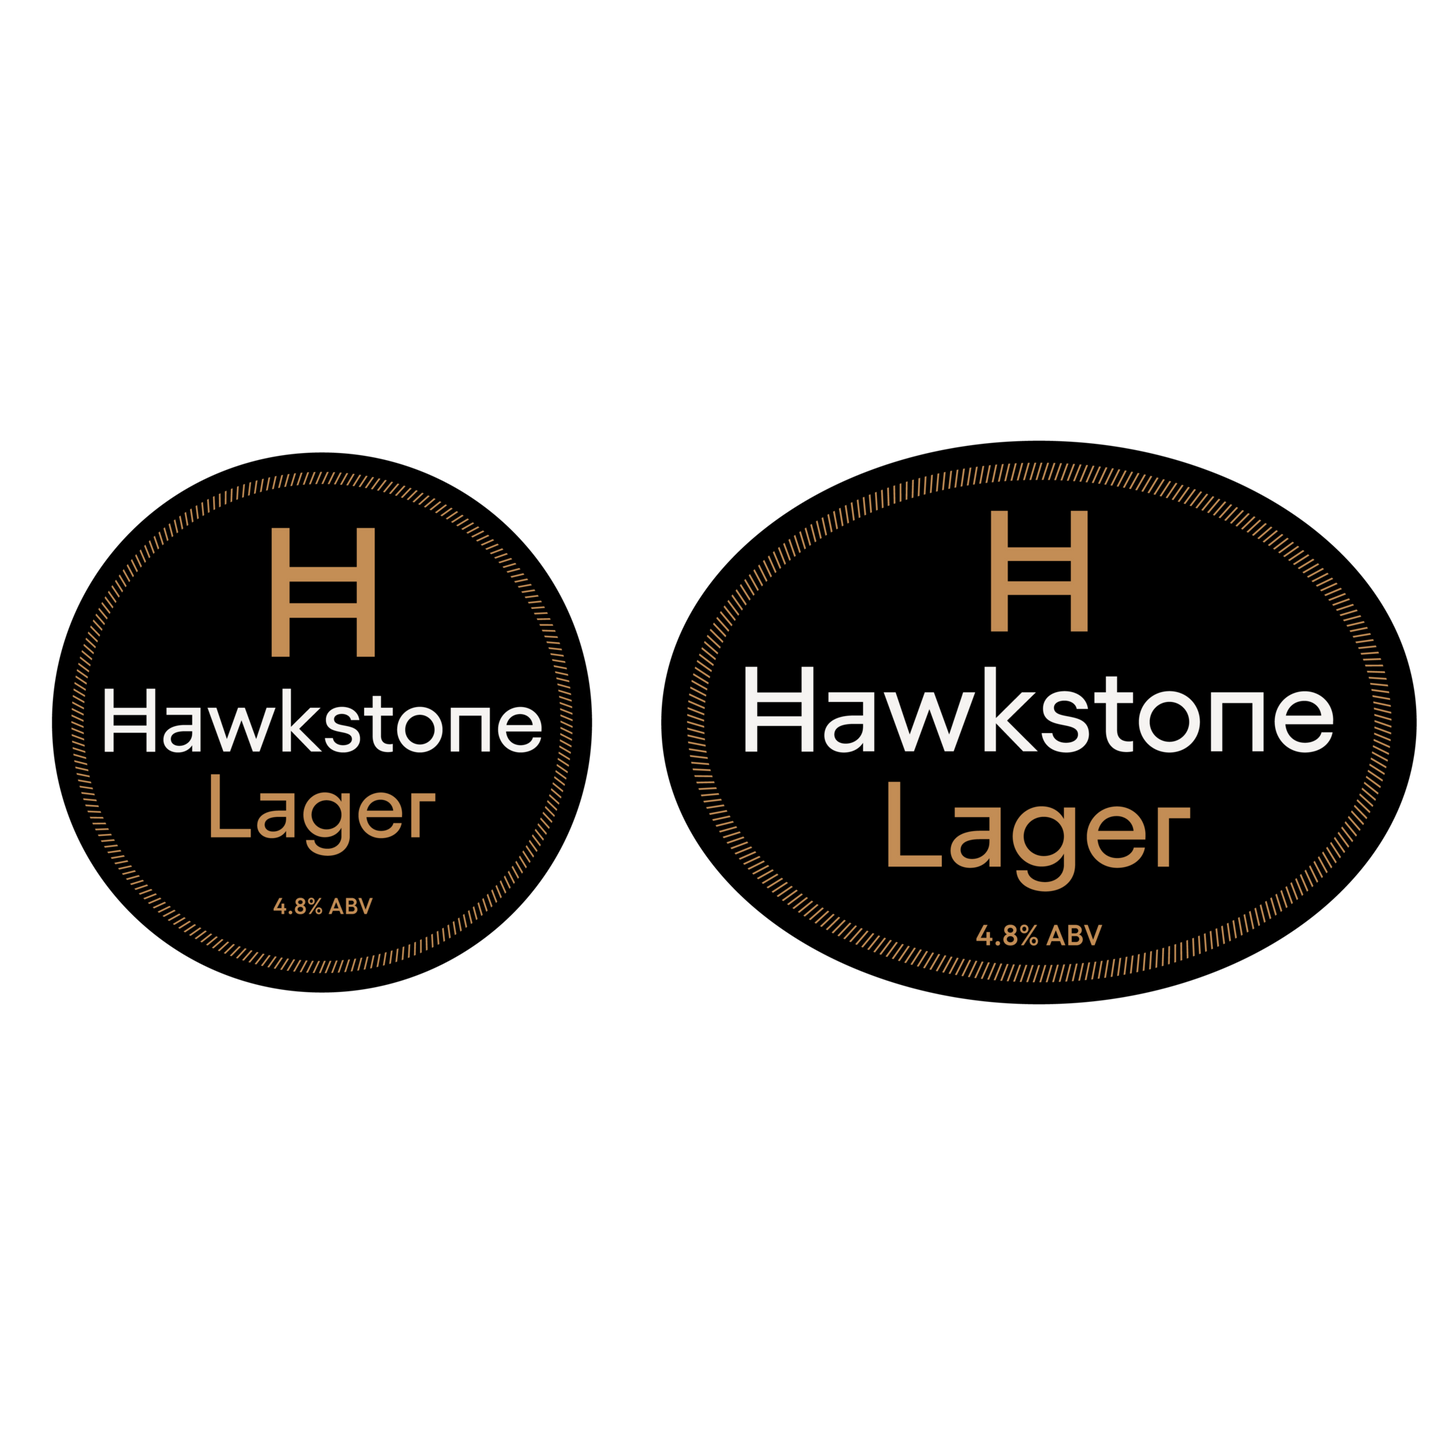 Hawkstone Premium lens/badge, Gen 3 